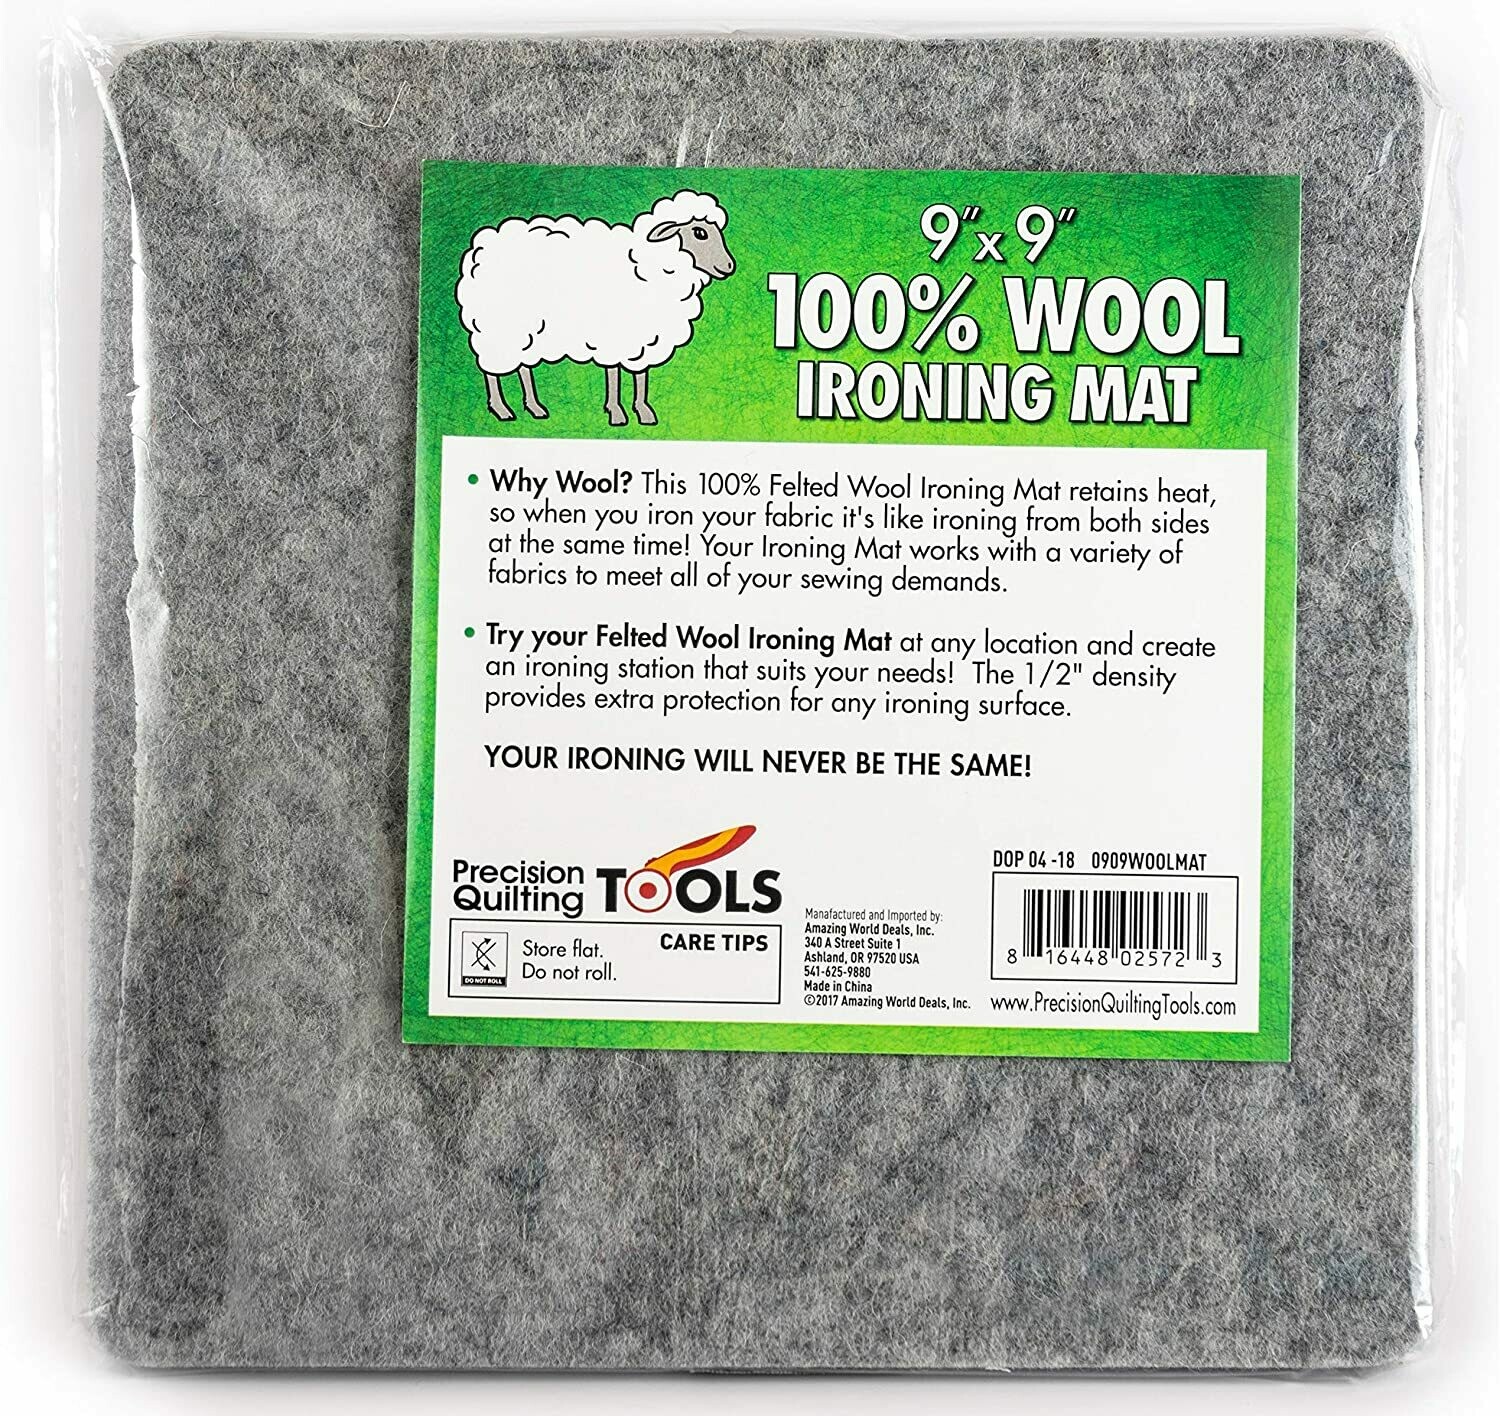 9 x 9 Wool Ironing Mat